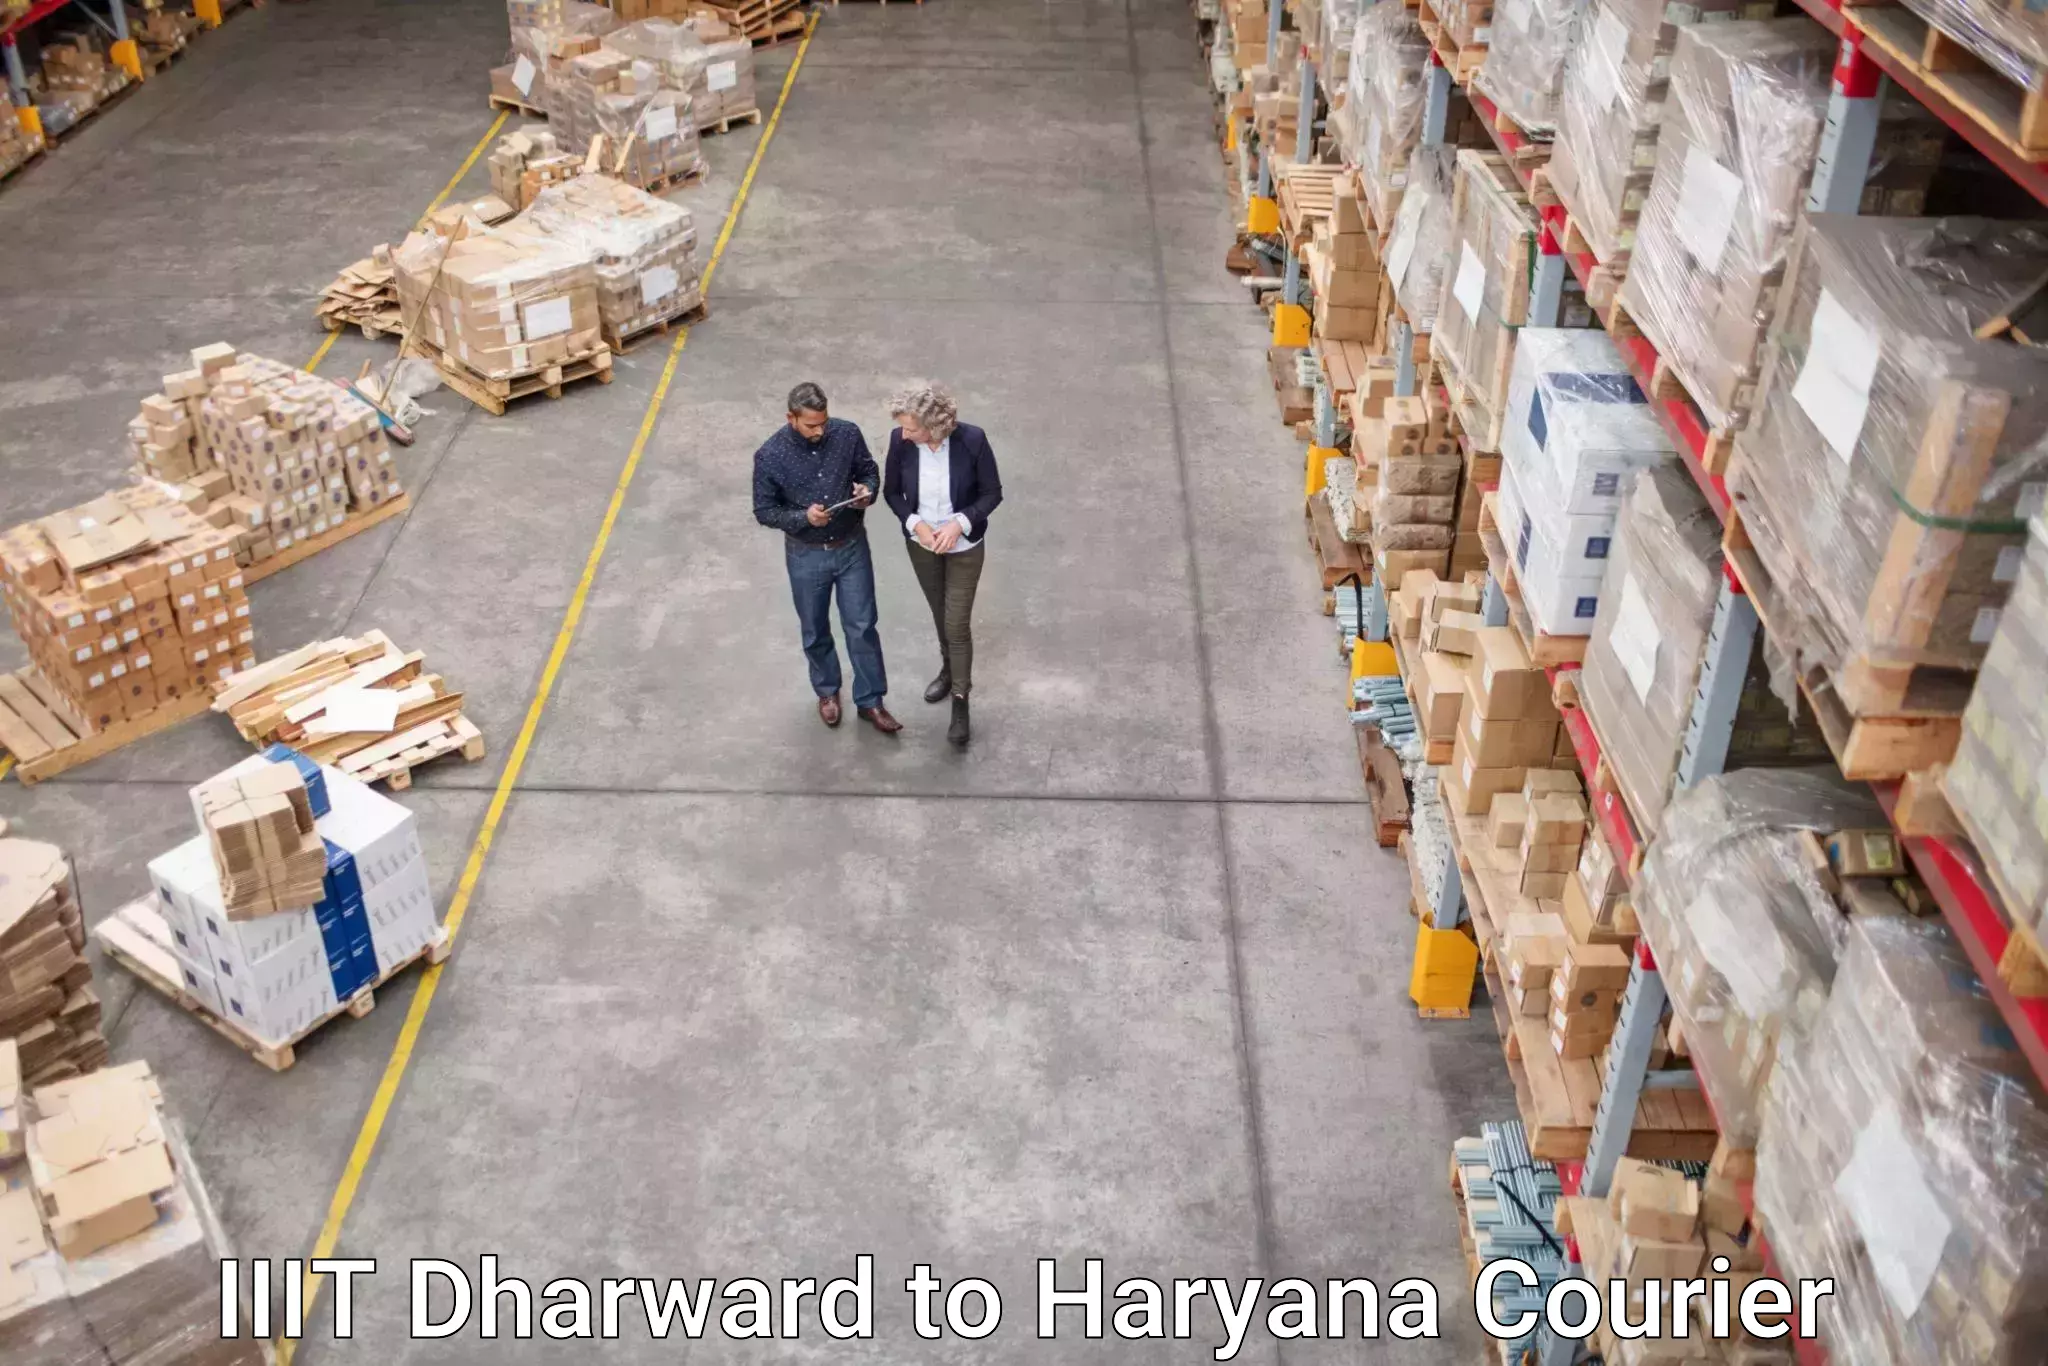 Digital courier platforms in IIIT Dharward to Chirya